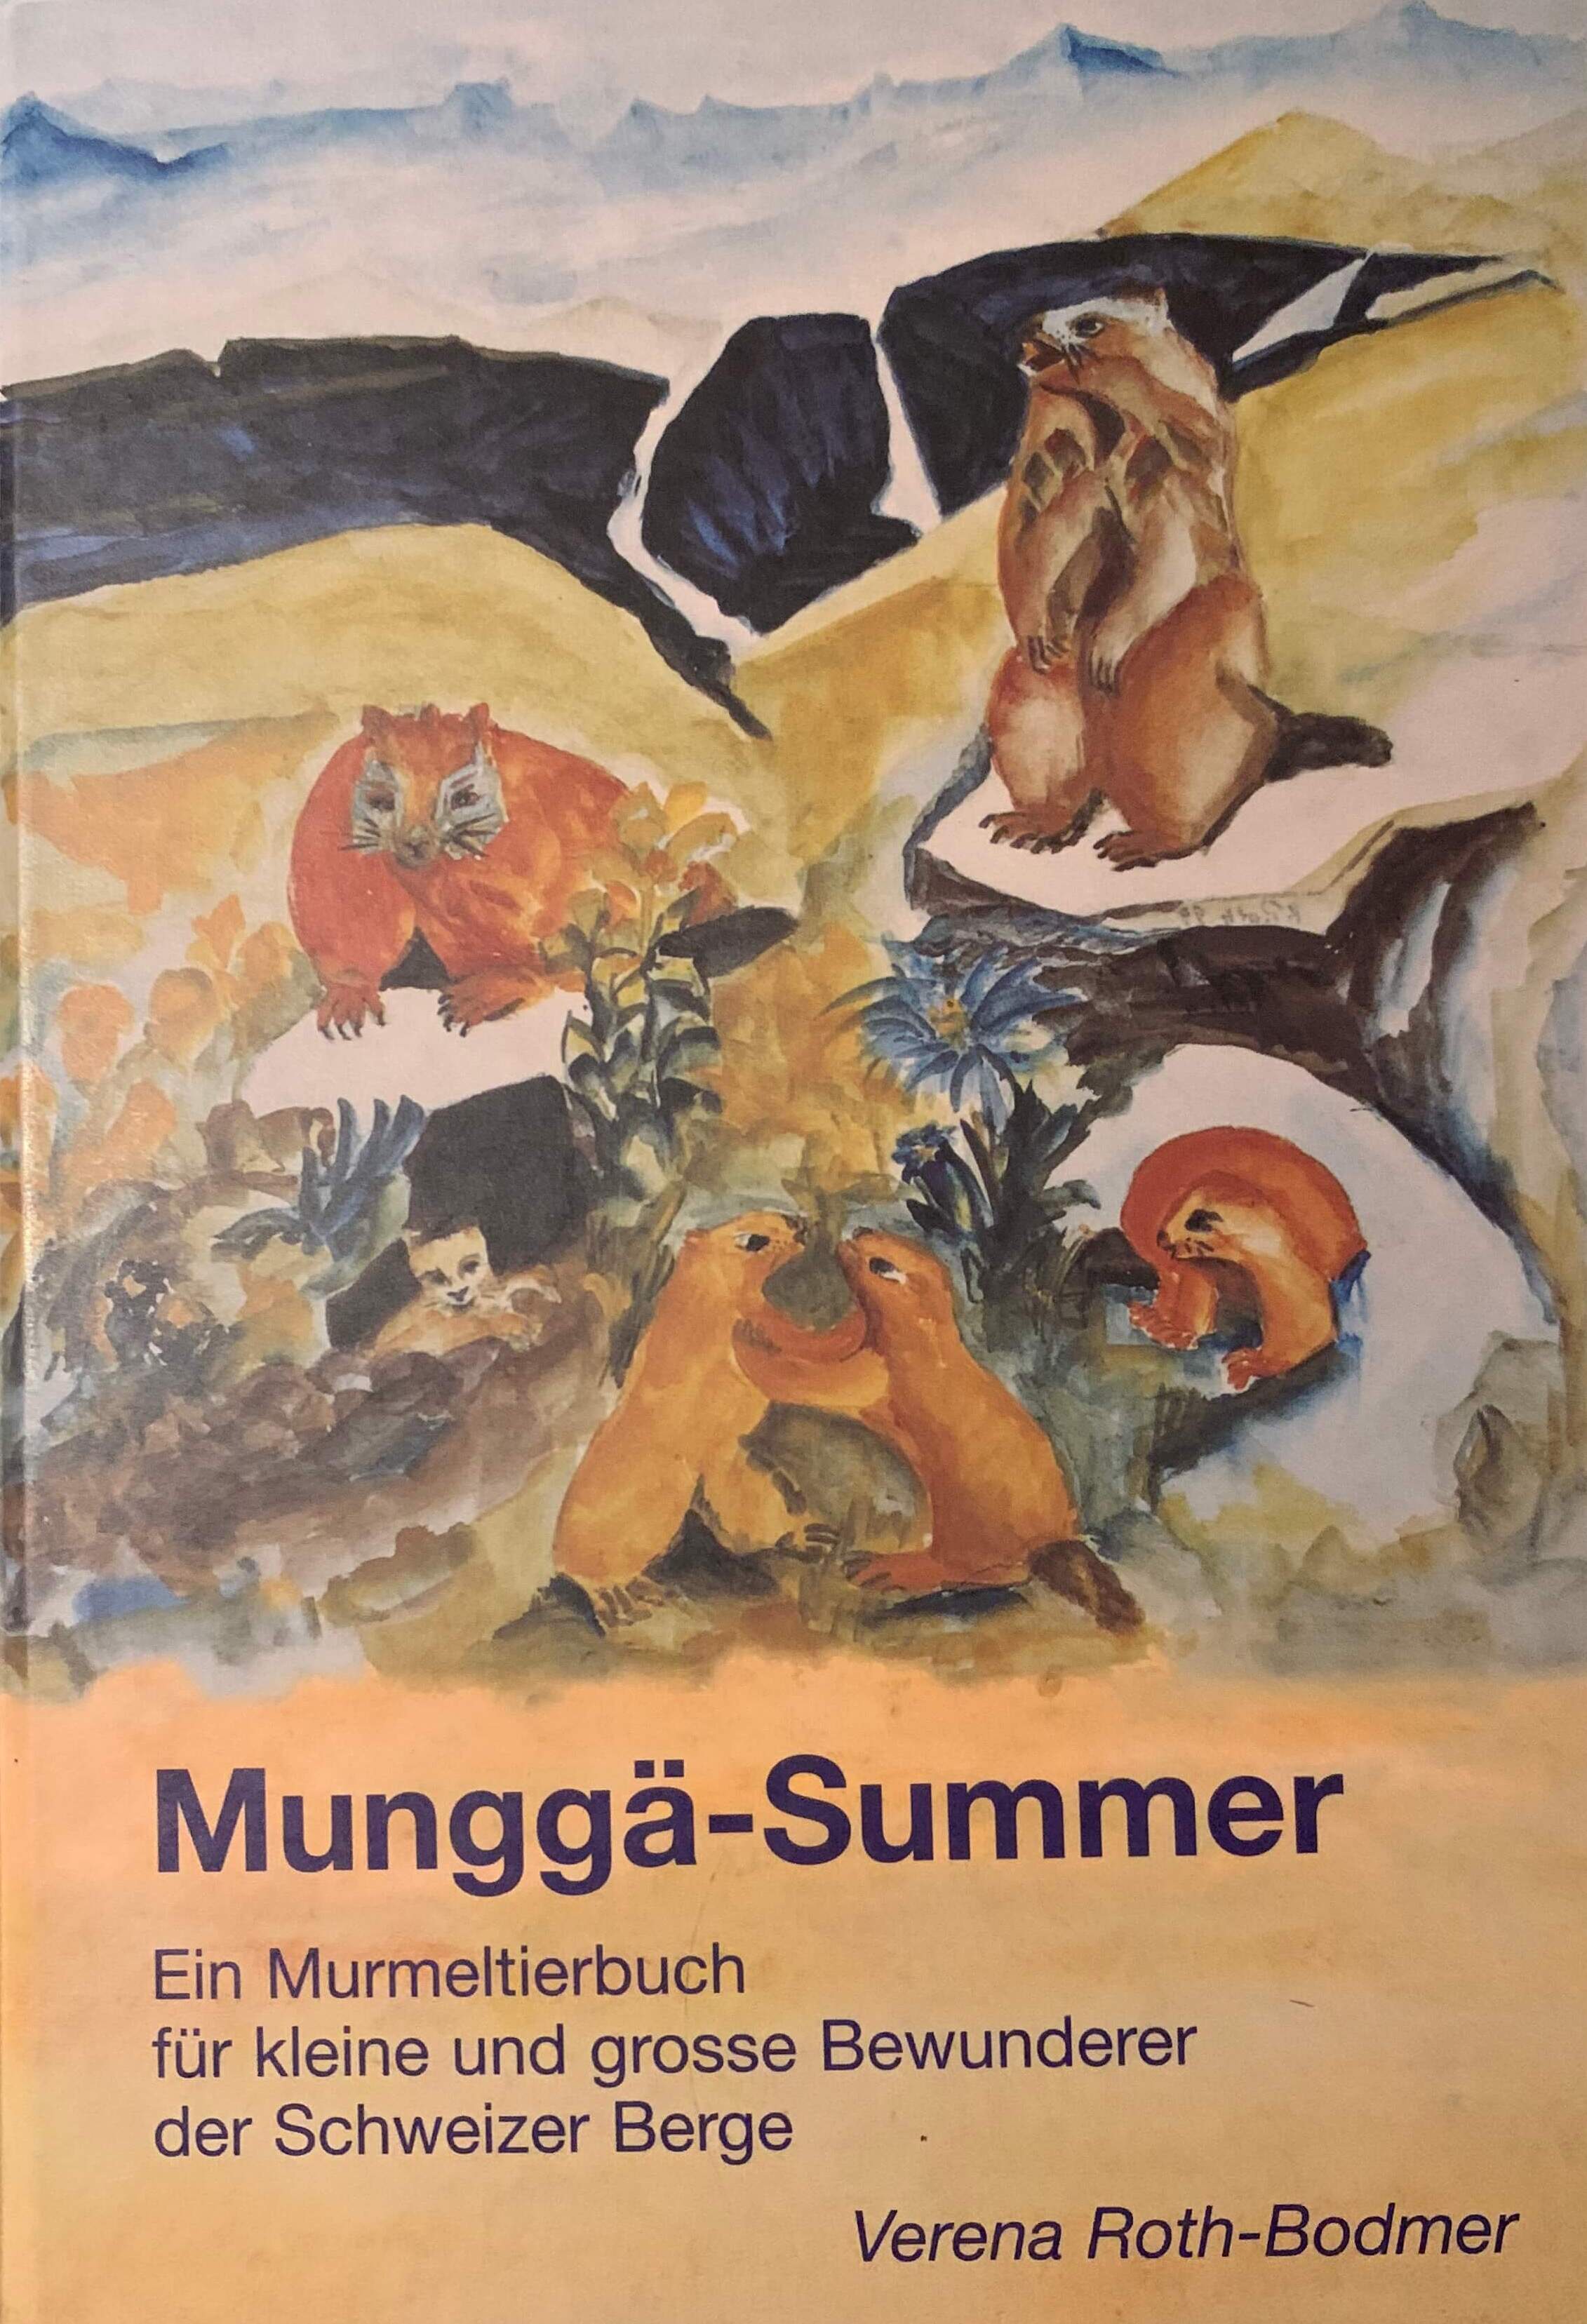 Munggä-Summer - Ein Murmeltierbuch für kleine und grosse Bewunderer der Schweizer Berge